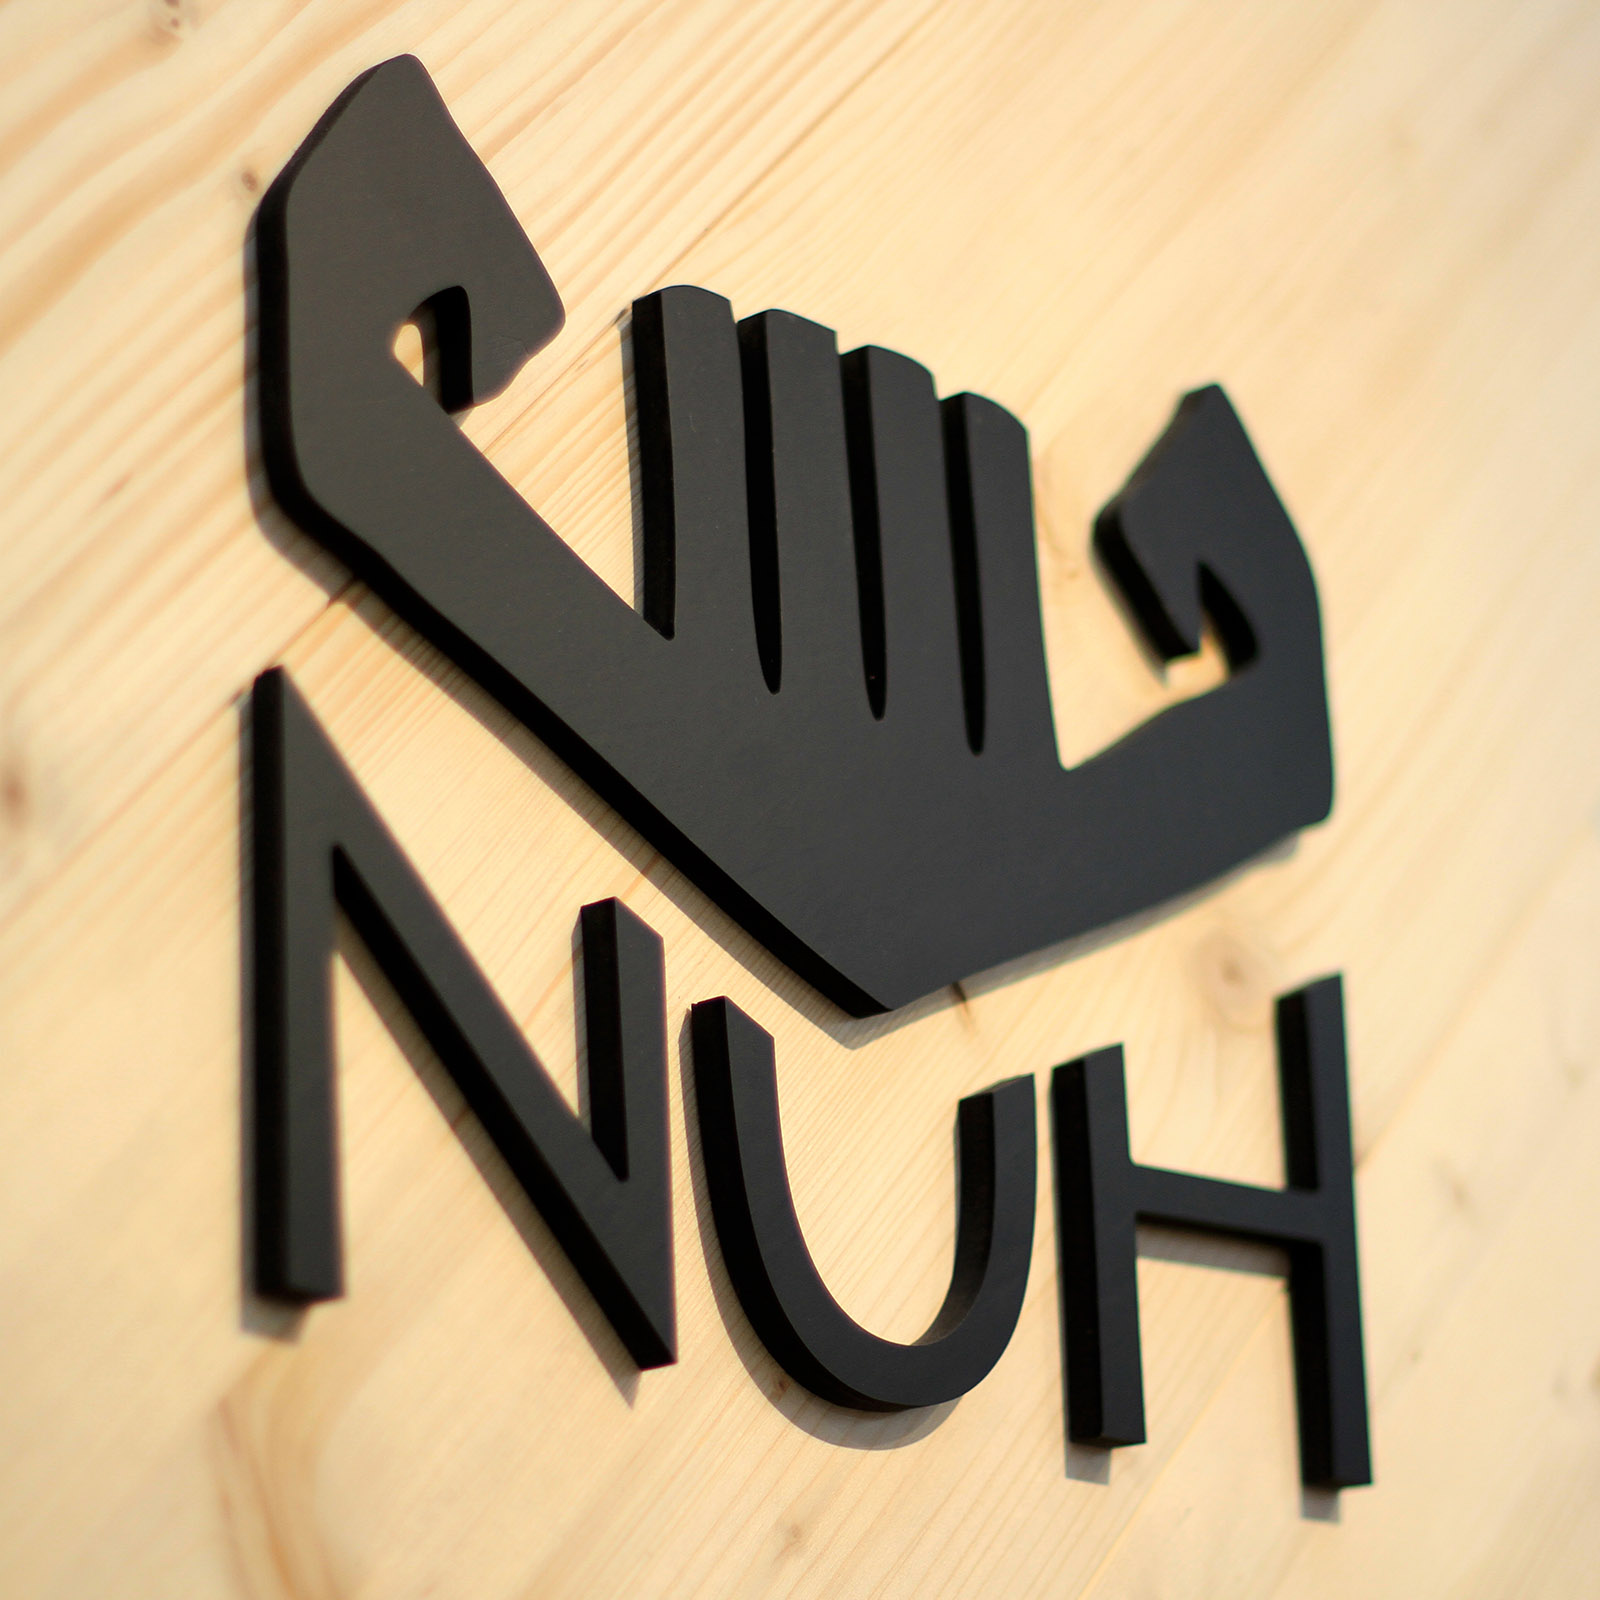 Nuh (Noah) Wine